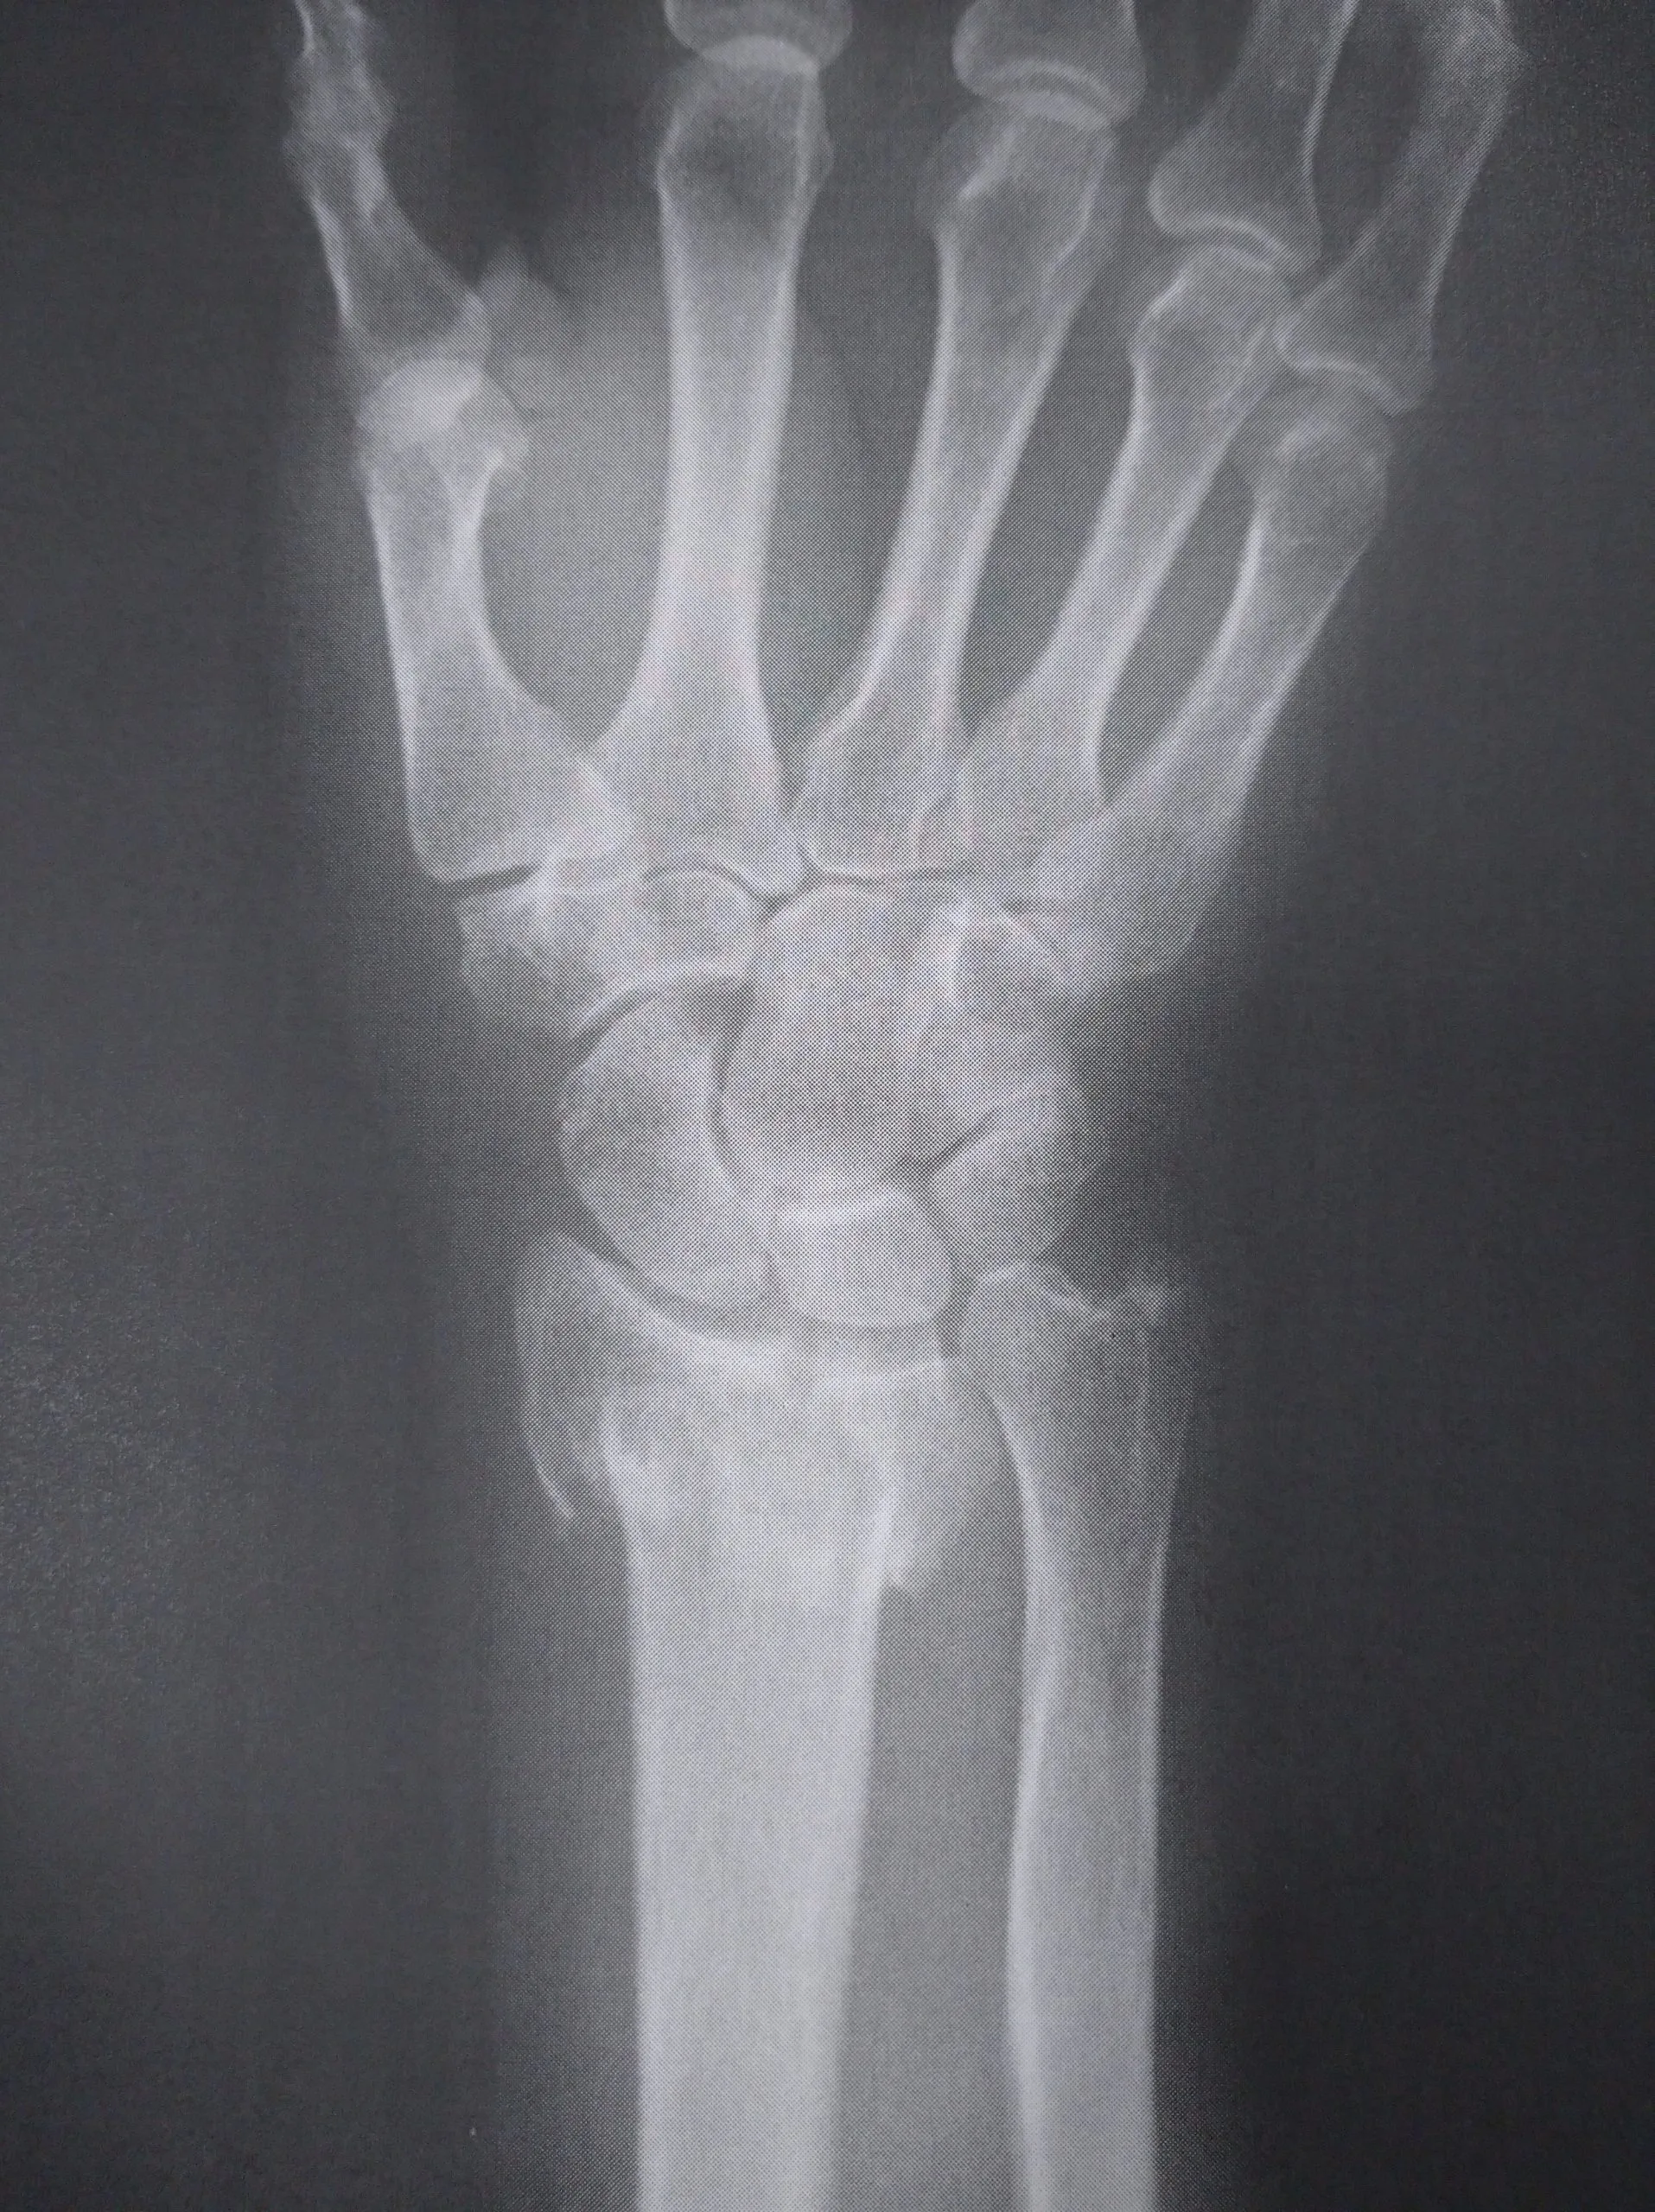 橈骨遠位端骨折 ささくら整形と手のクリニック